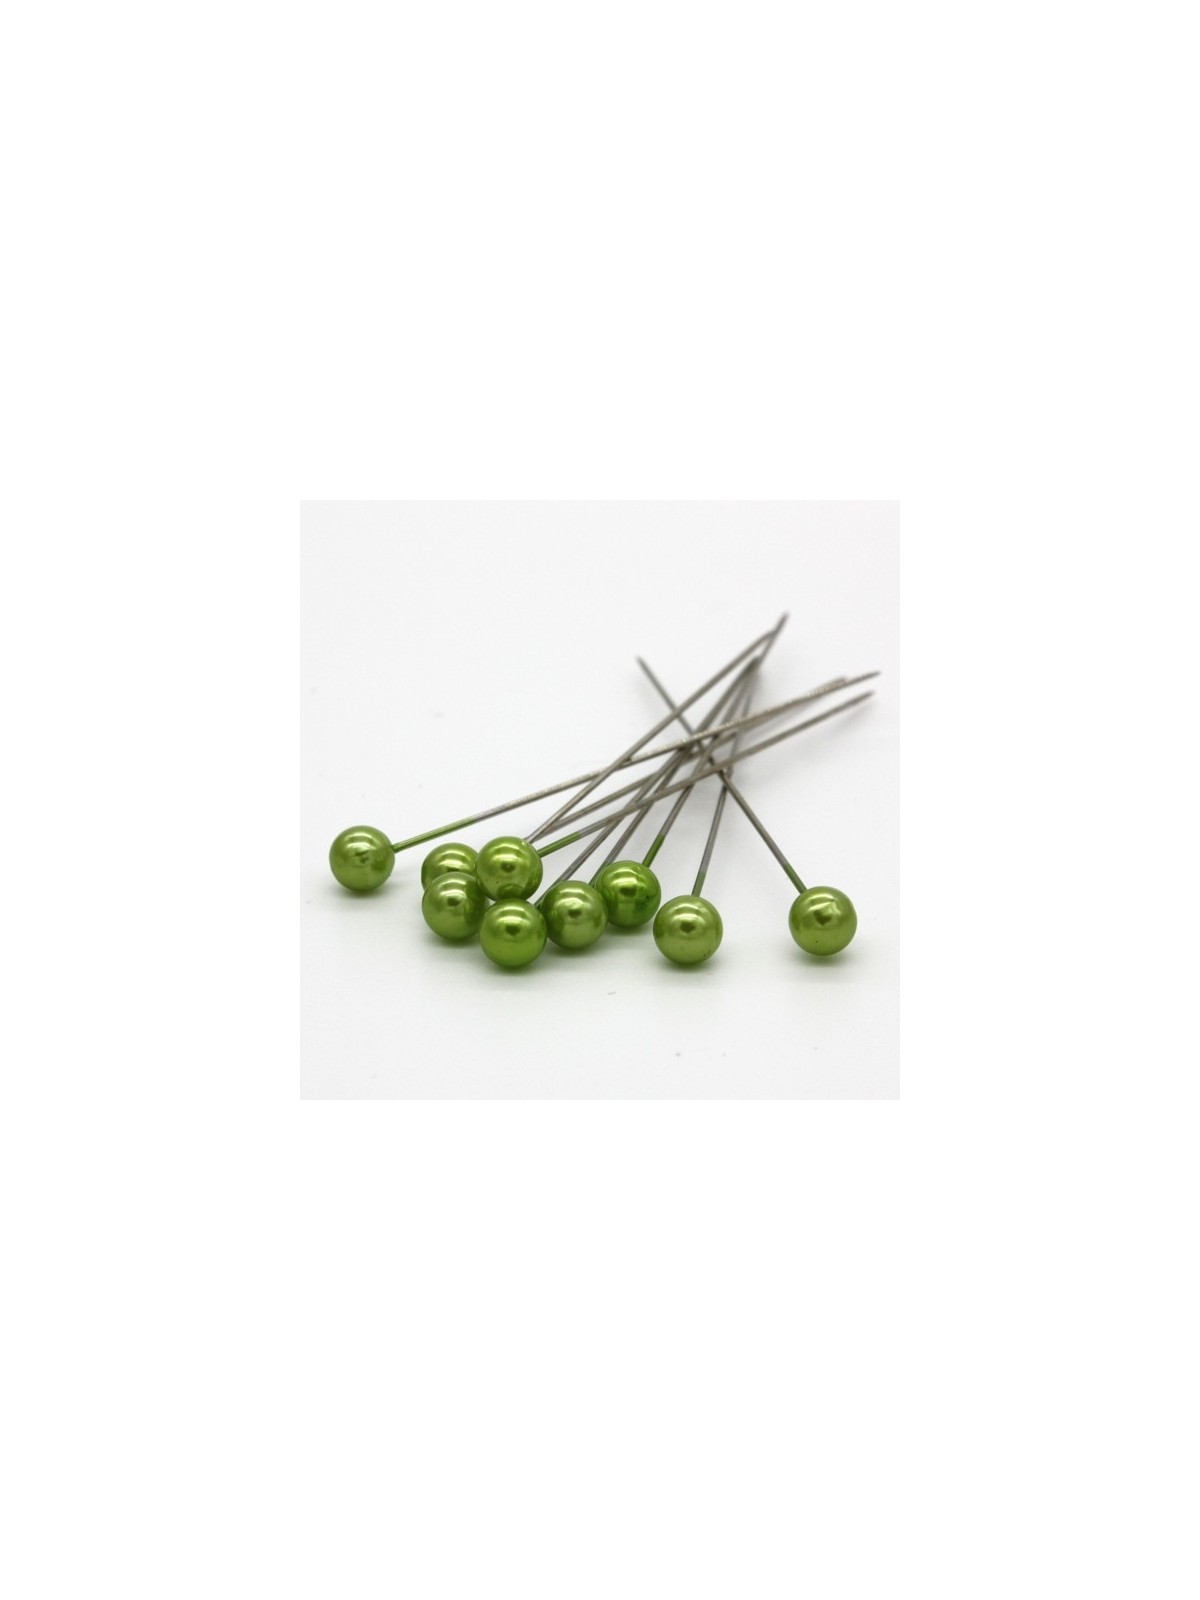 Dekorační špendlík - světlá zelená perla - 65mm/9ks